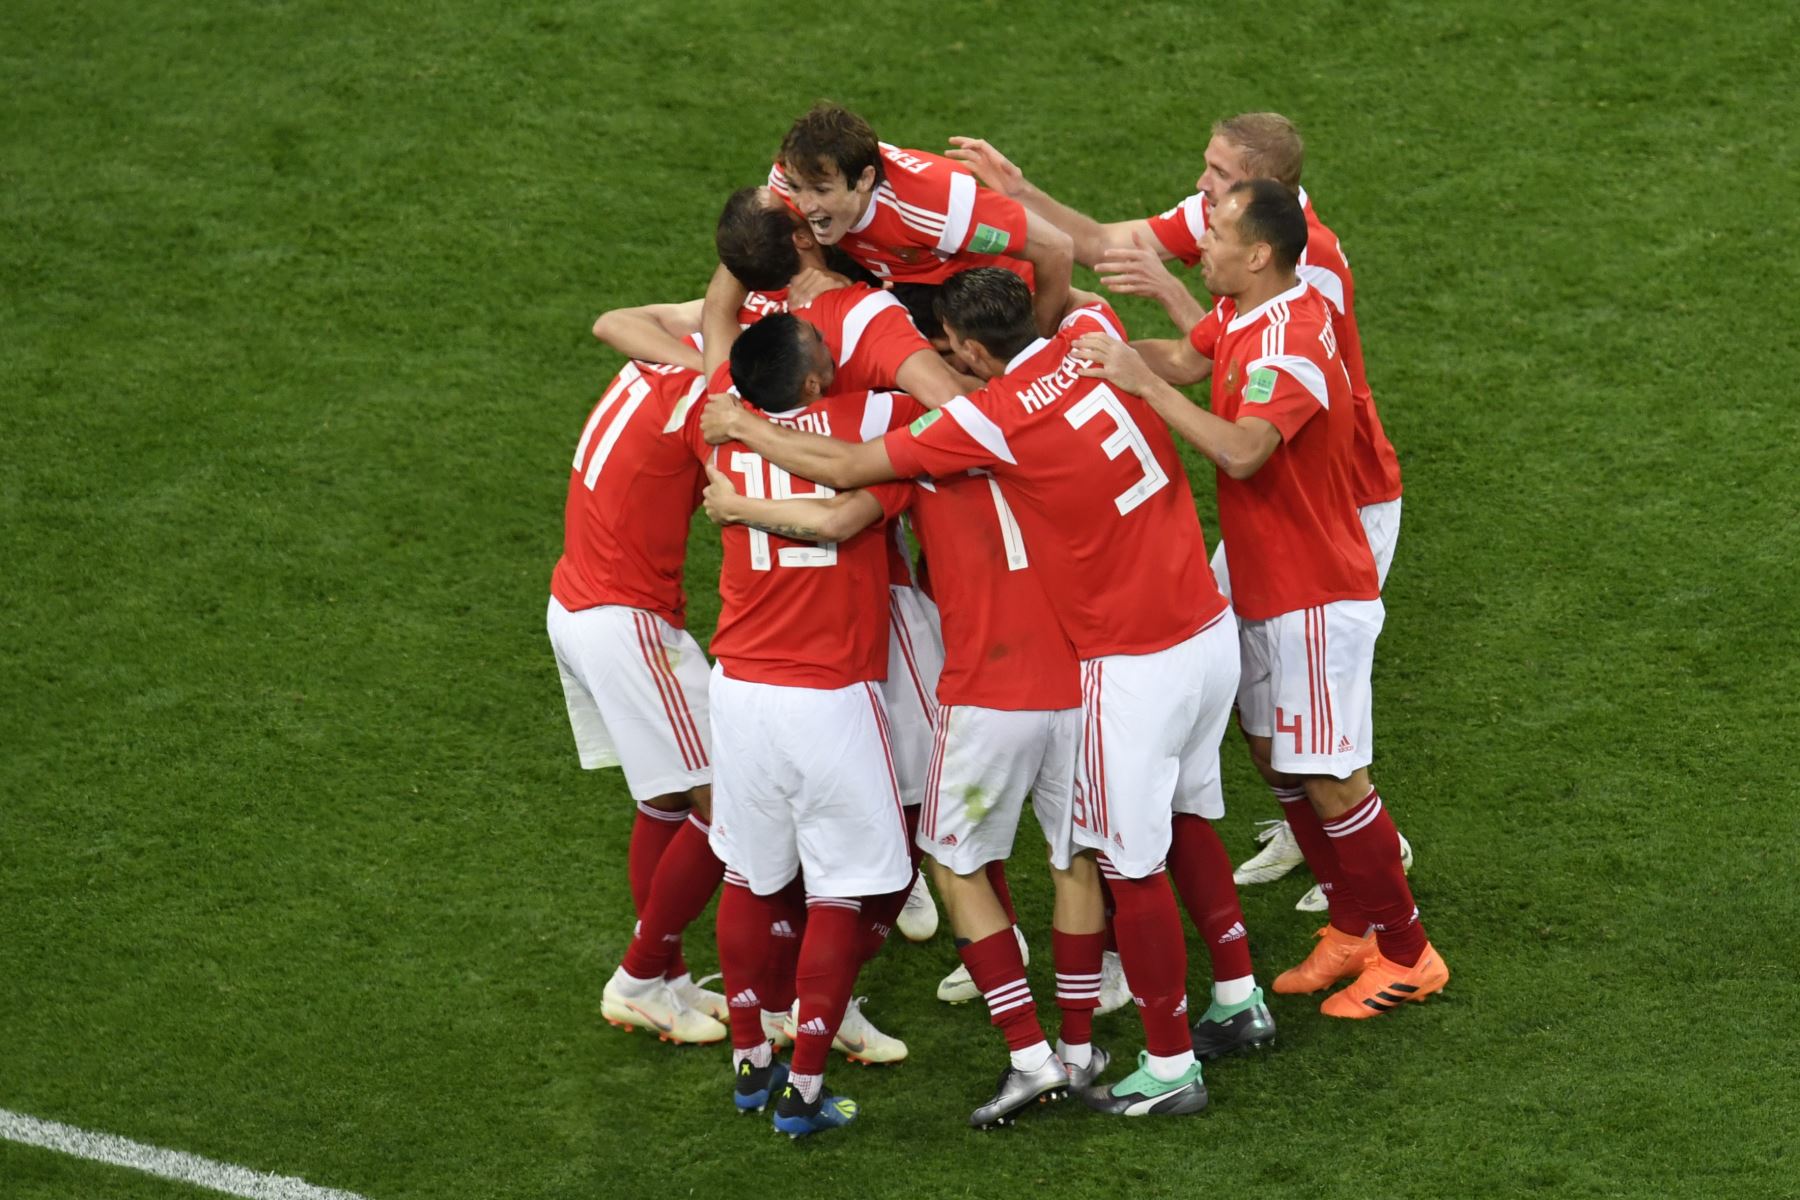 Los jugadores rusos celebran su primer gol durante el partido de fútbol Rusia A del Grupo A de la Copa Mundial 2018 entre Rusia y Egipto en el estadio de San Petersburgo el 19 de junio de 2018. / AFP